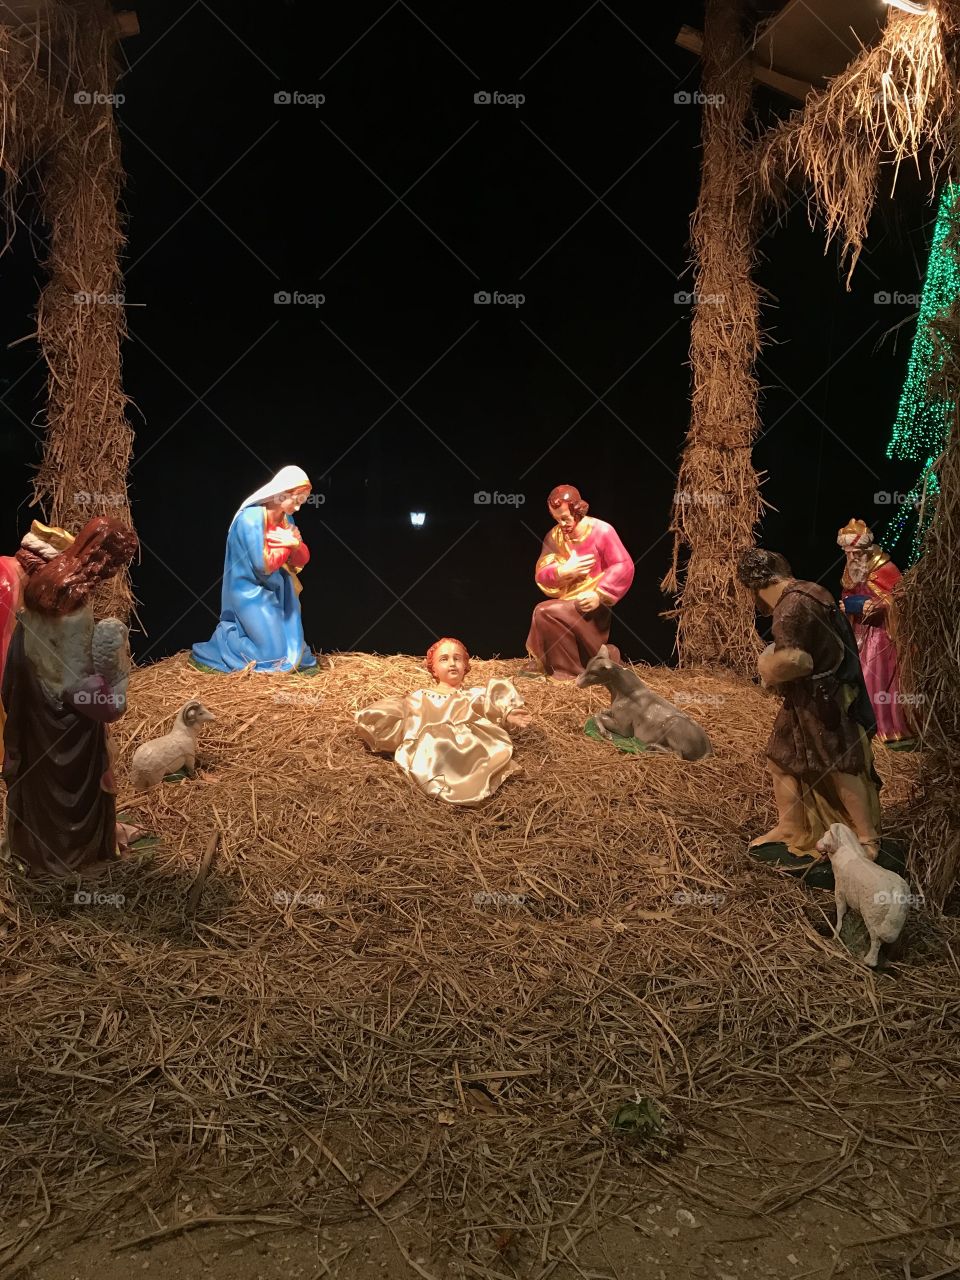 Jesus’s born in Bethlehem 